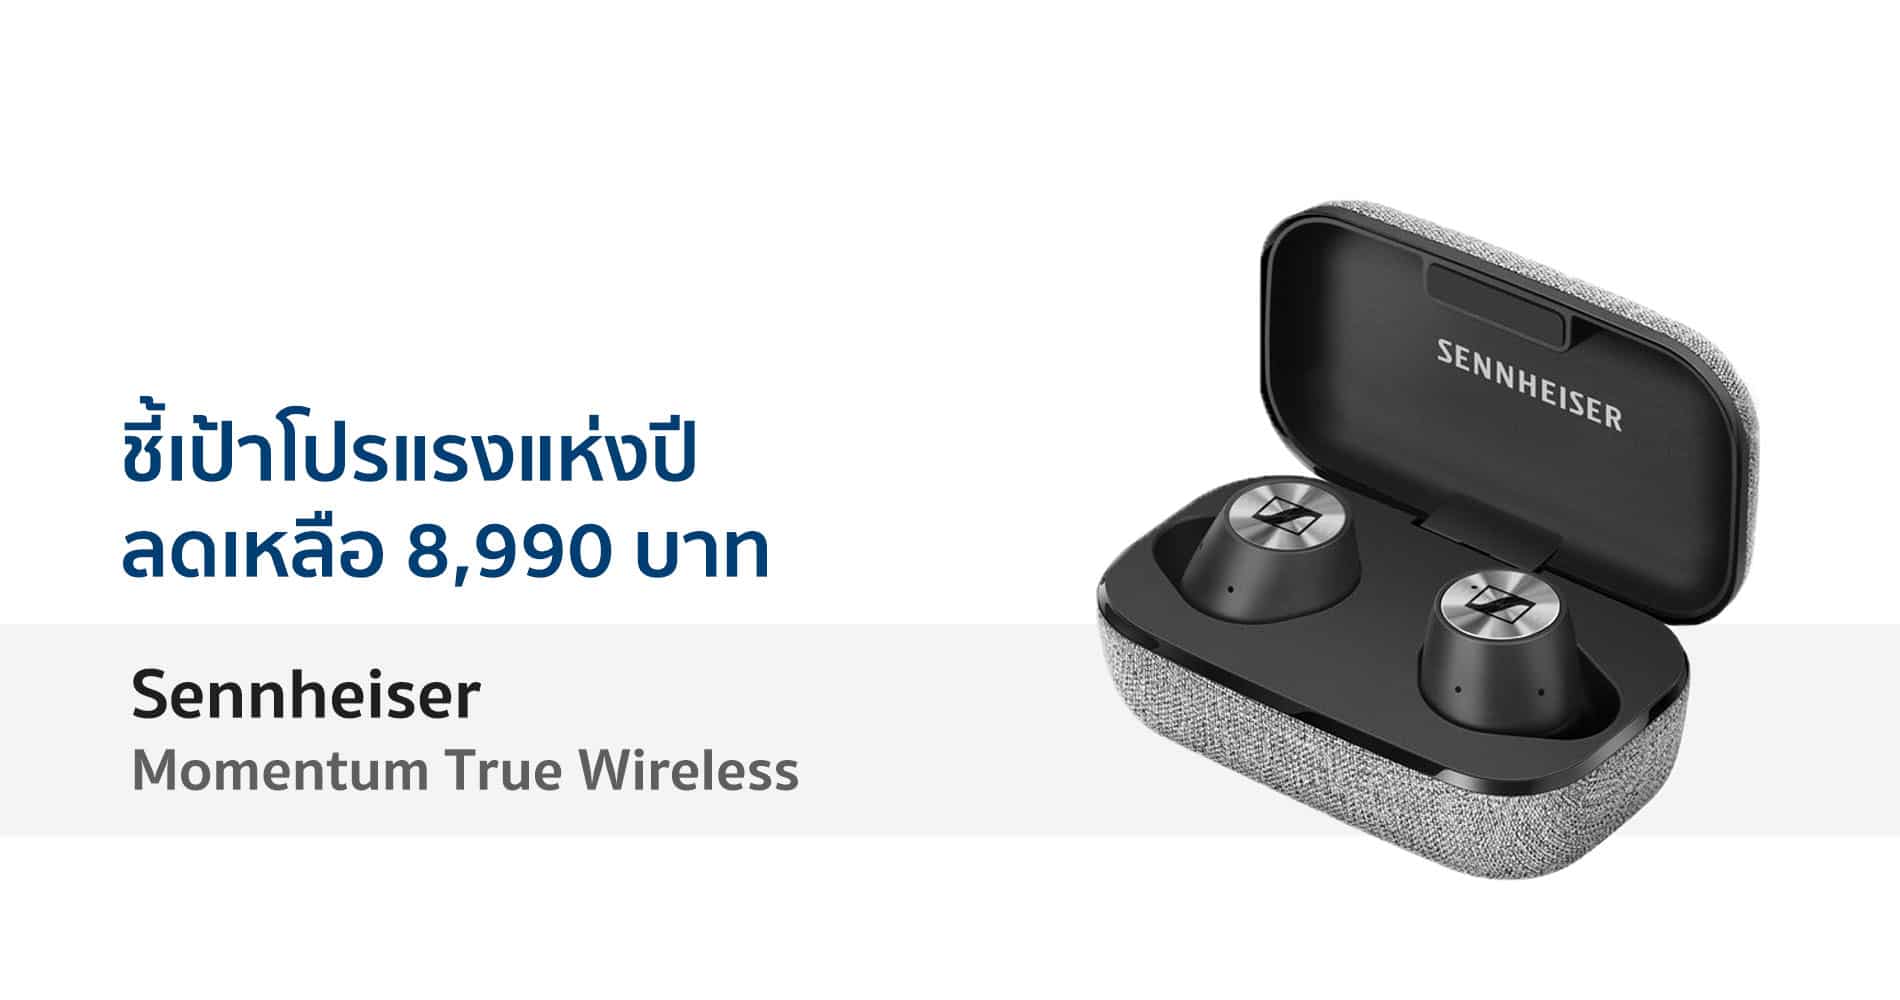 ชี้เป้า Sennheiser Momentum True Wireless ลดเหลือ 8,990 บาท วันที่ 11 เดือน 11 1